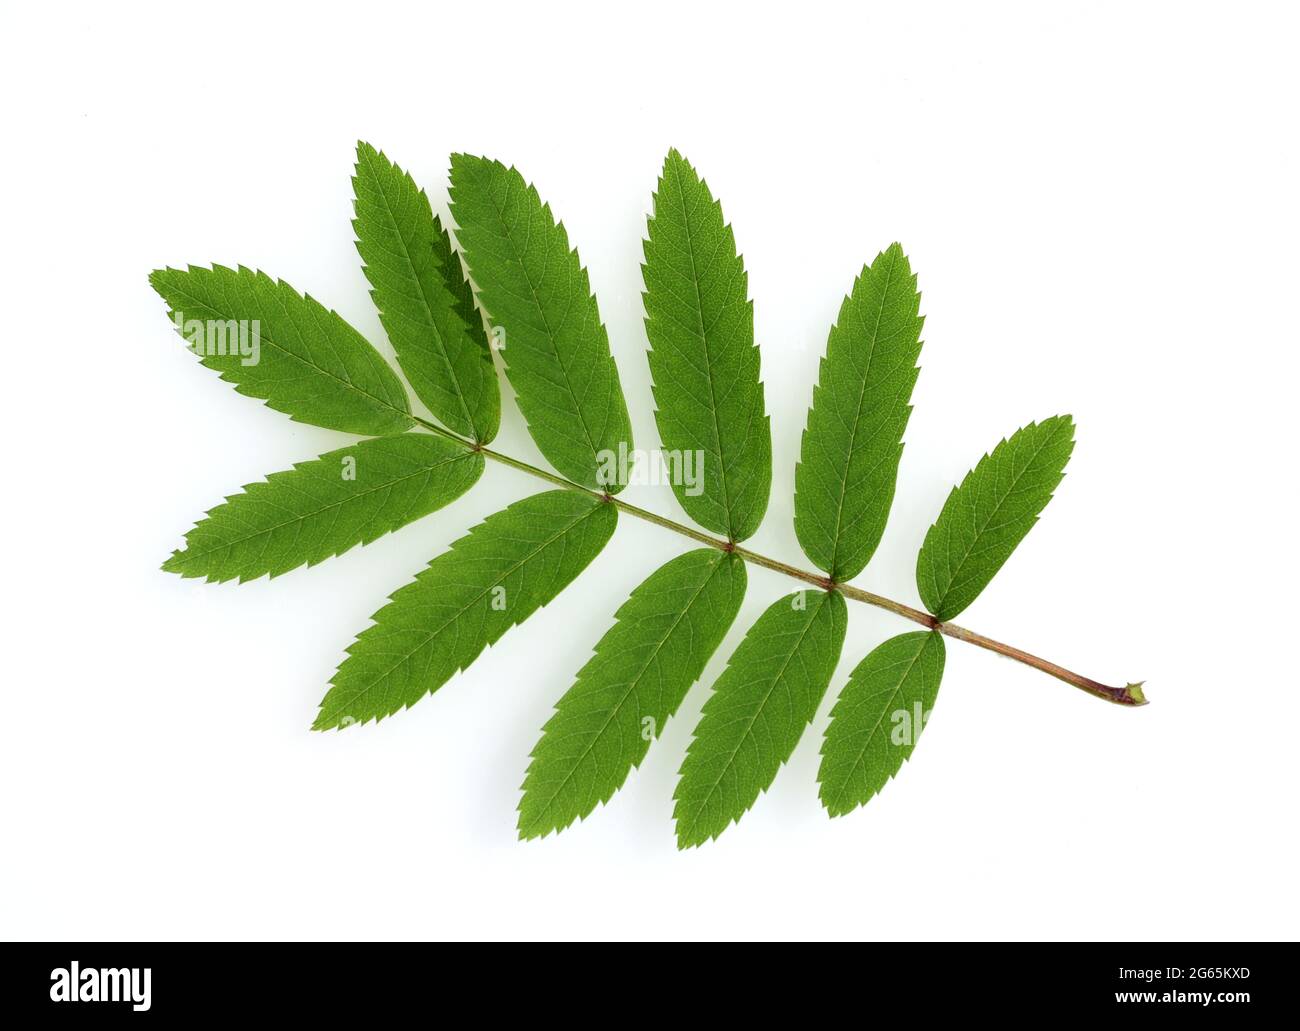 Eberesche, Sorbus aucuparia, ist eine heimische Baumart. Mountain ash, Sorbus aucuparia, is a native tree species. Stock Photo